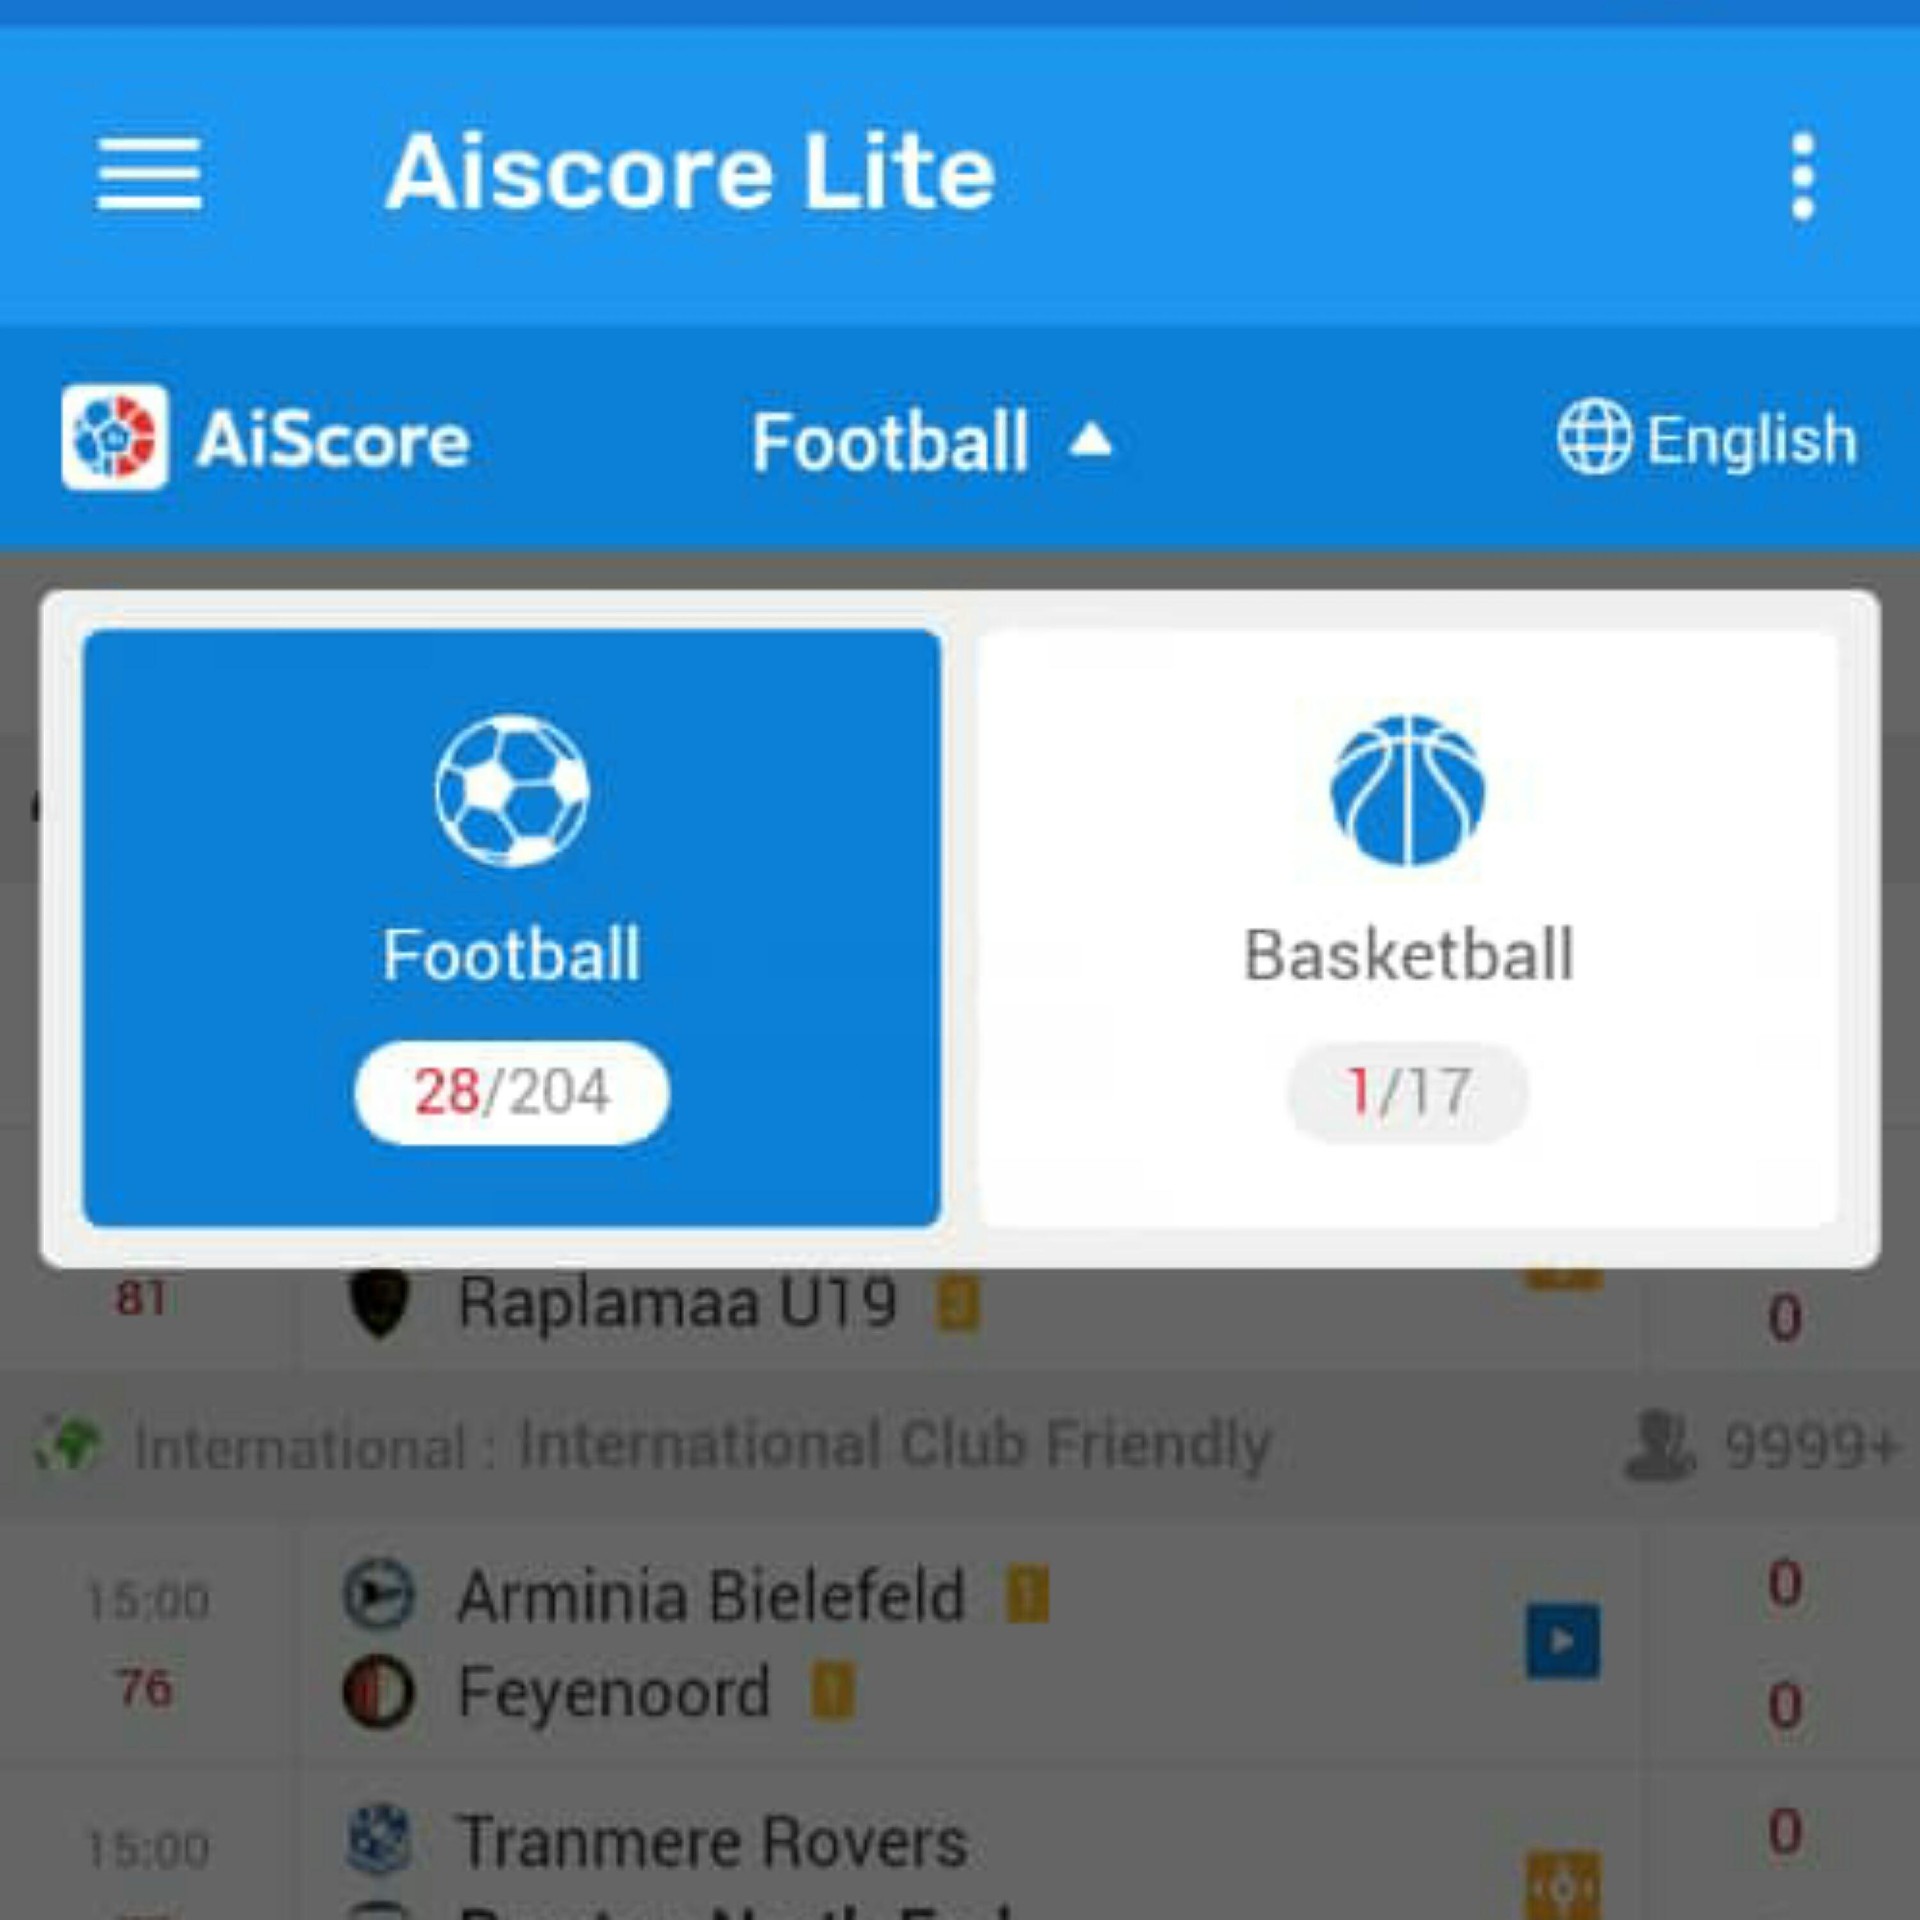 Veja online todos os resultados de jogos de futebol no AiScore